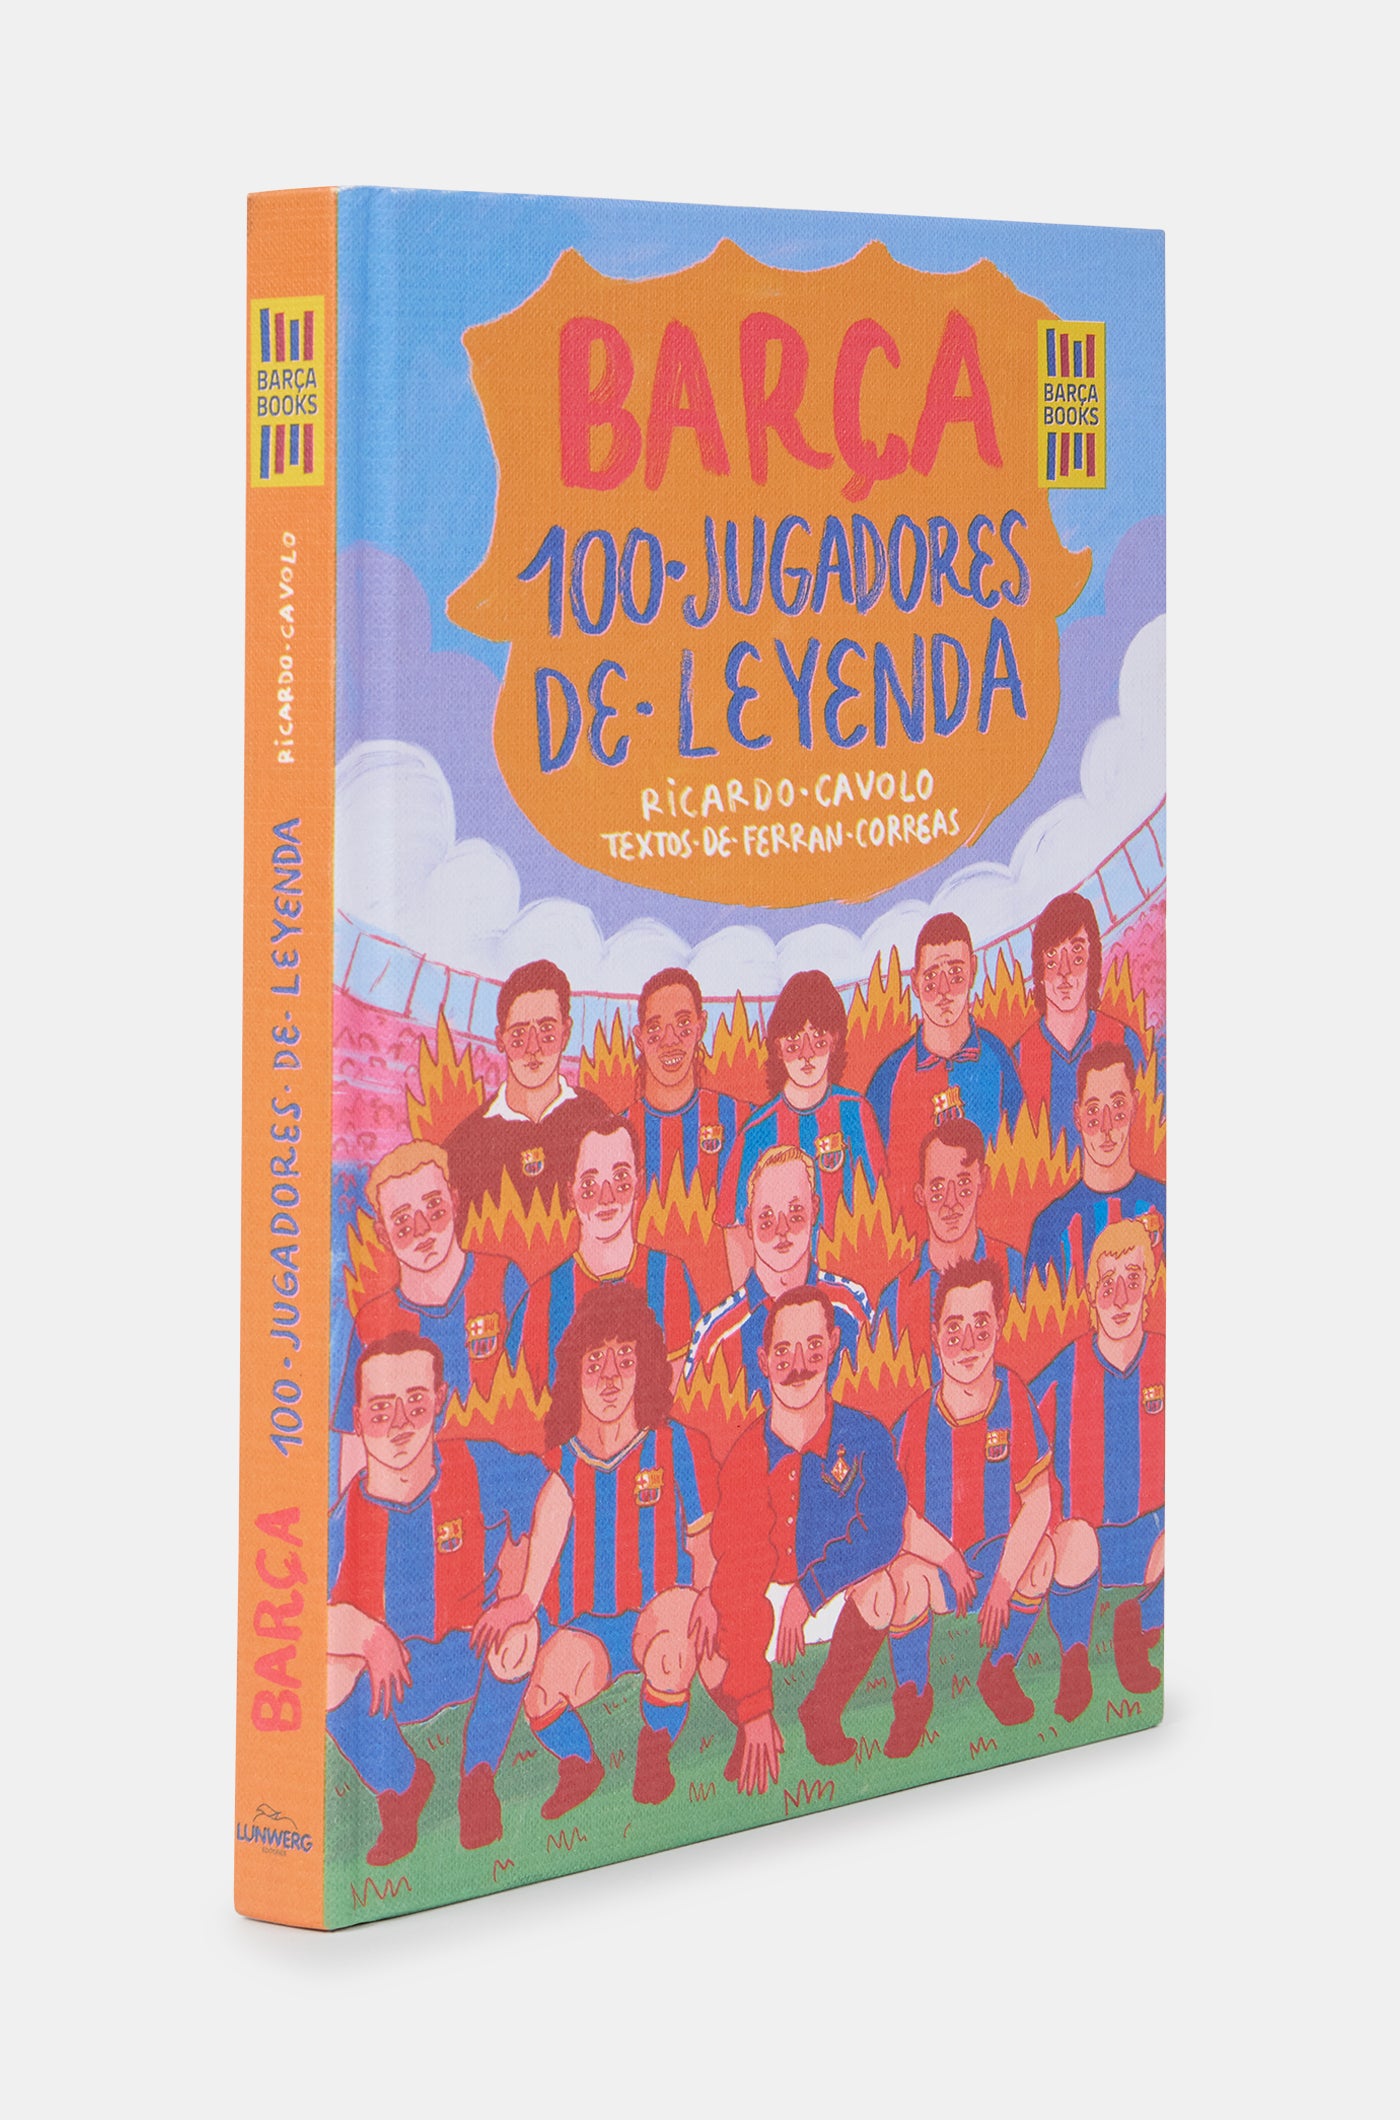 Book "Barça. 100 jugadores de leyenda"